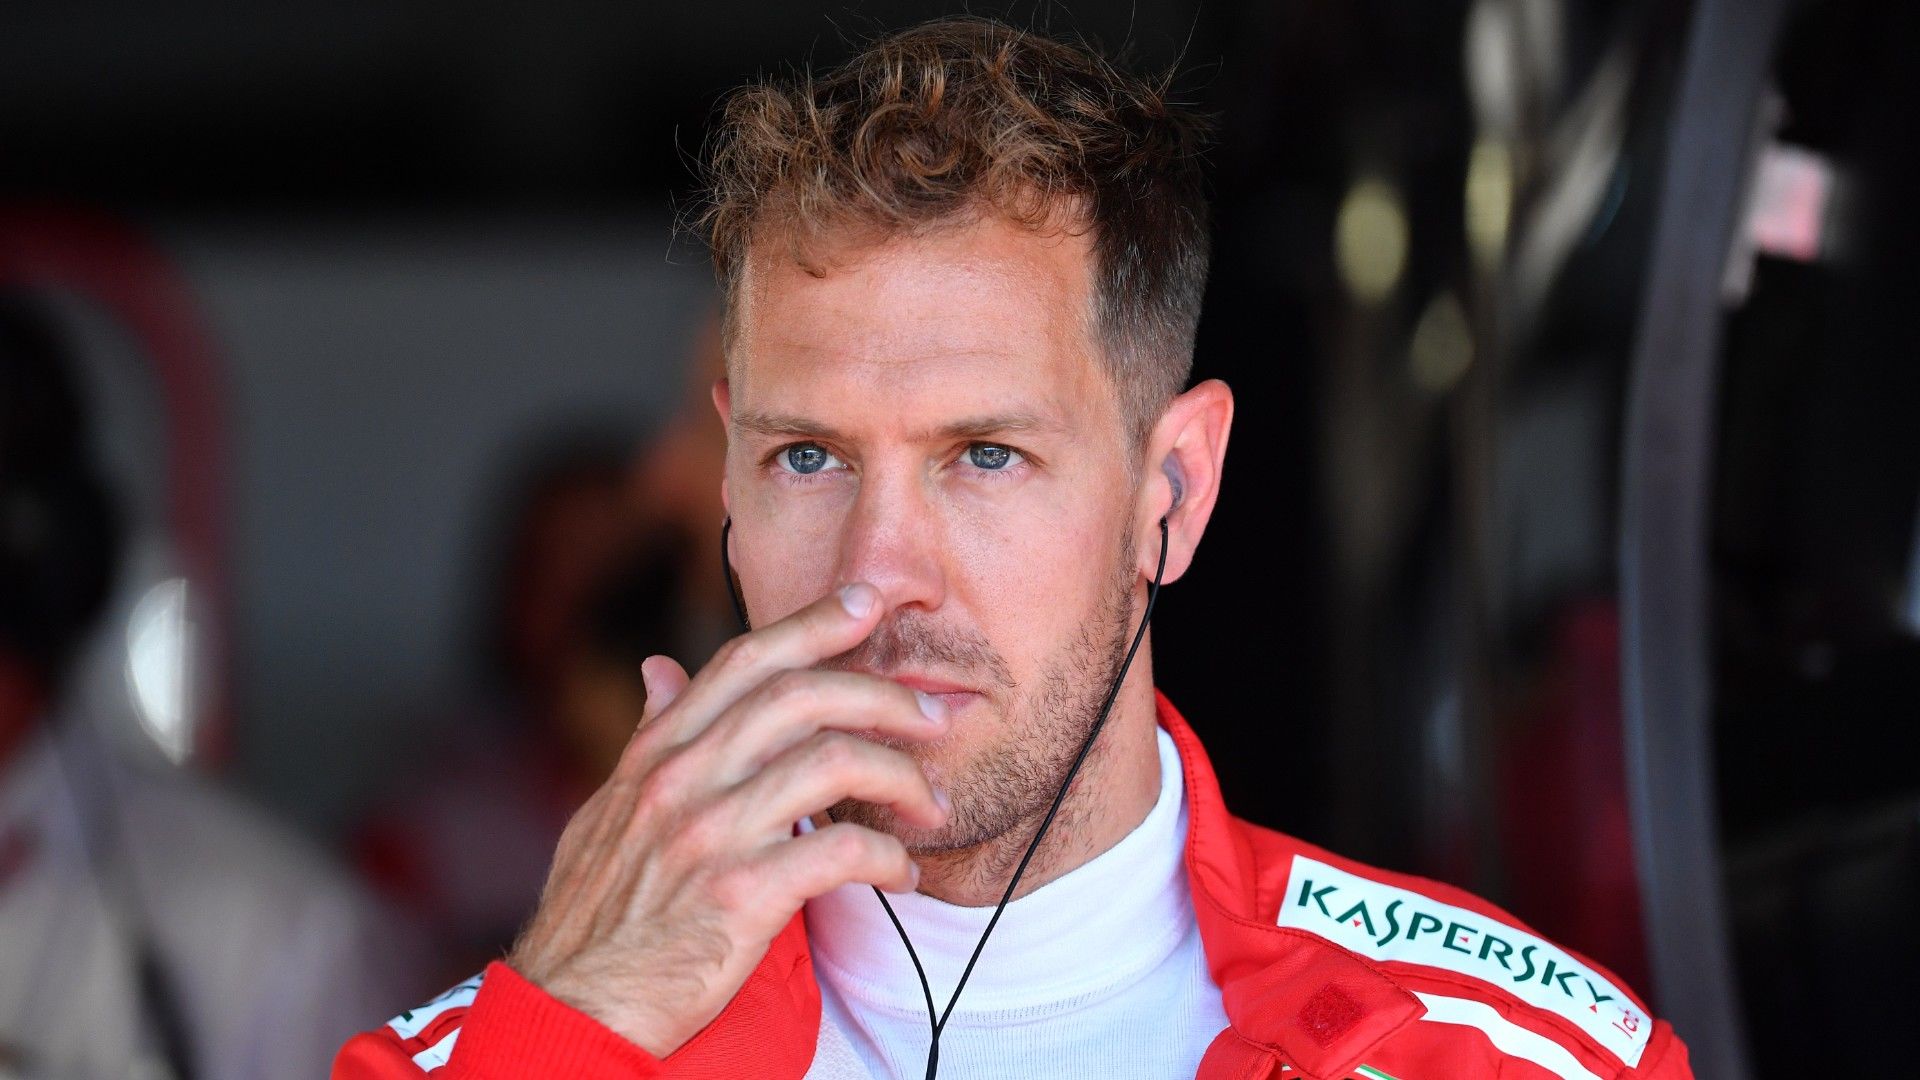 Sebastian Vettellel kapcsolatban a Mercedes csapatfőnöke Susie asszony véleményét is kikéri